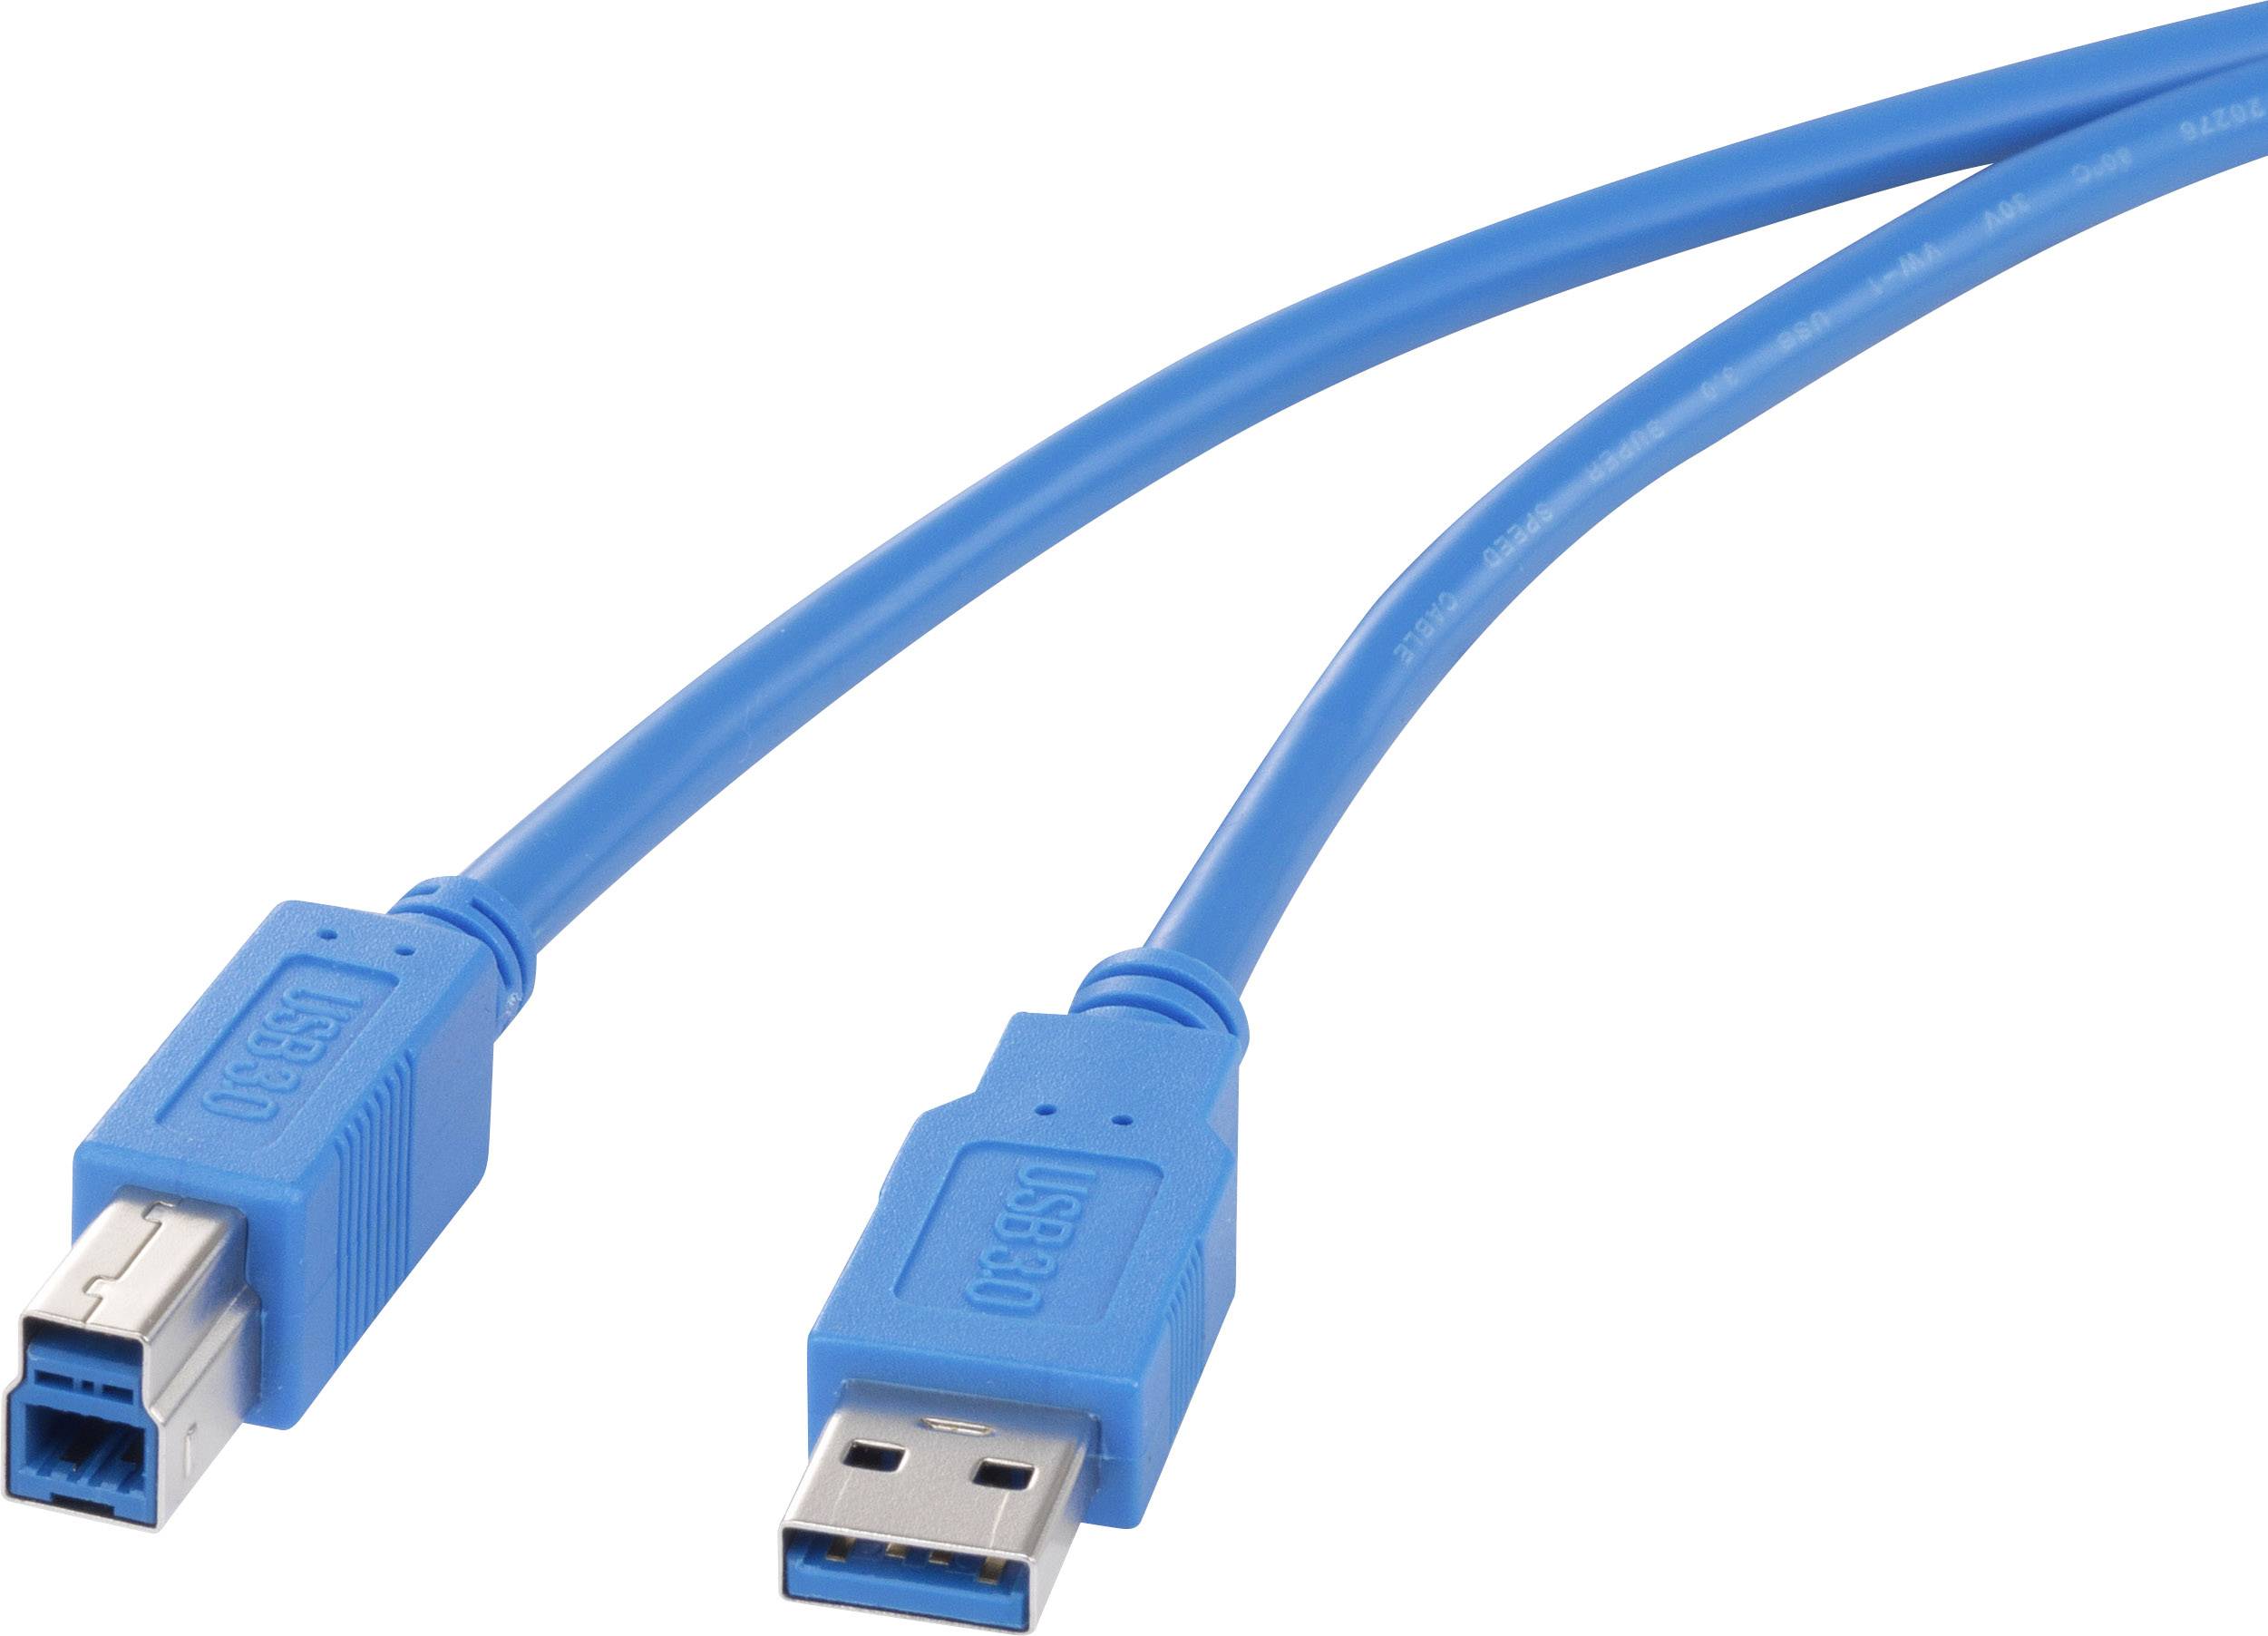 CONRAD Renkforce USB 3.0 Kabel [1x USB 3.0 Stecker A - 1x USB 3.0 Stecker B] 1.8 m Blau vergoldete S